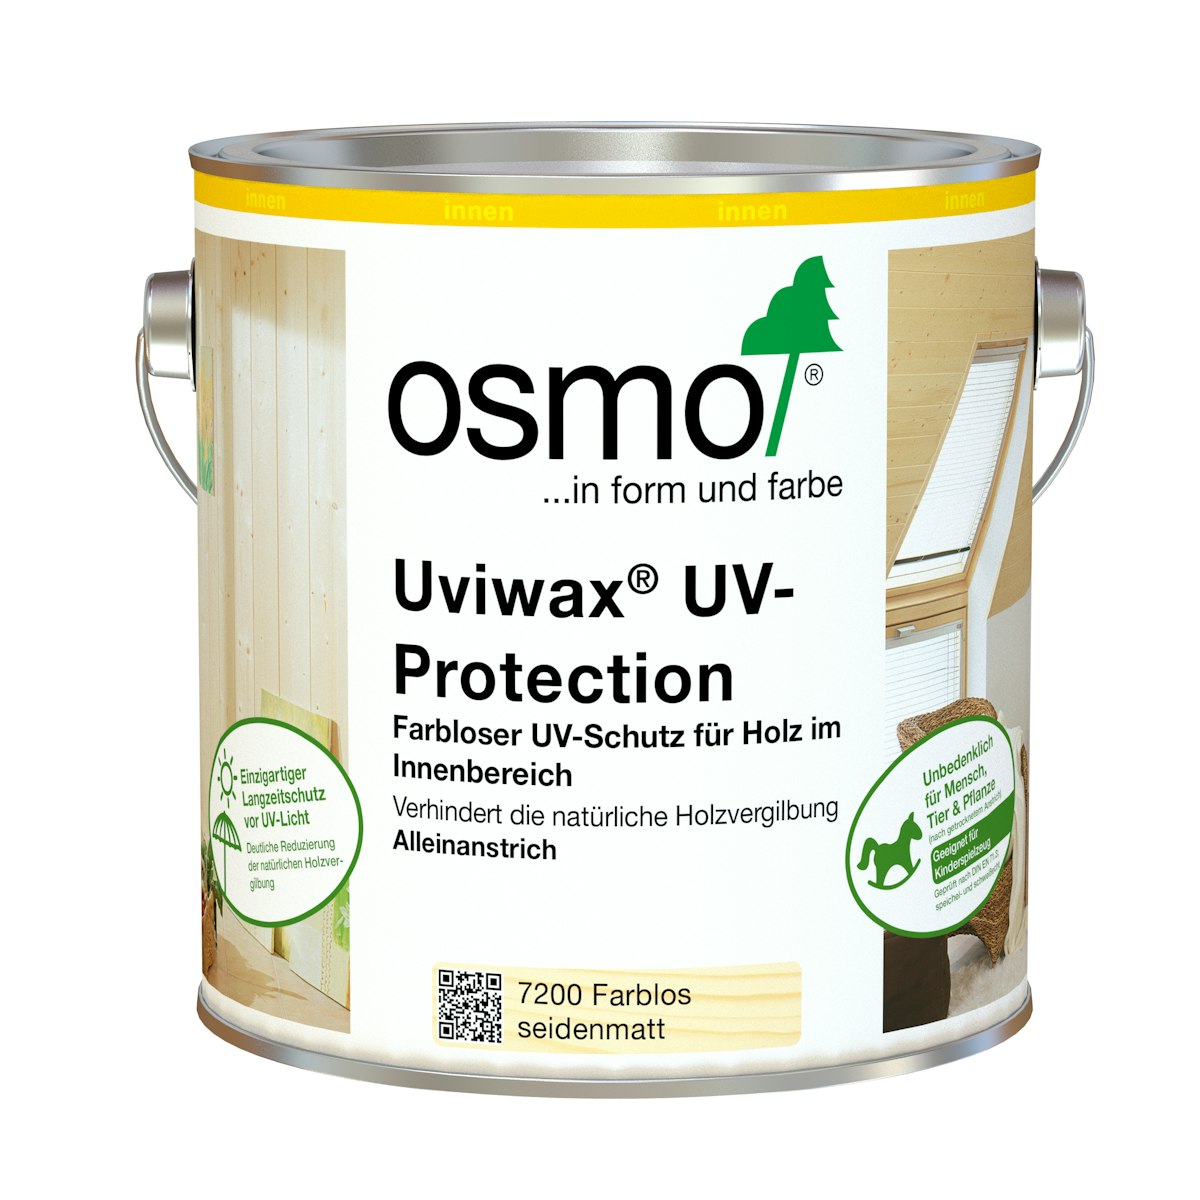 OSMO Uviwax® UV-Protection -7200 Farblos seidenmatt-10 Liter von Osmo Farben & Zubehör